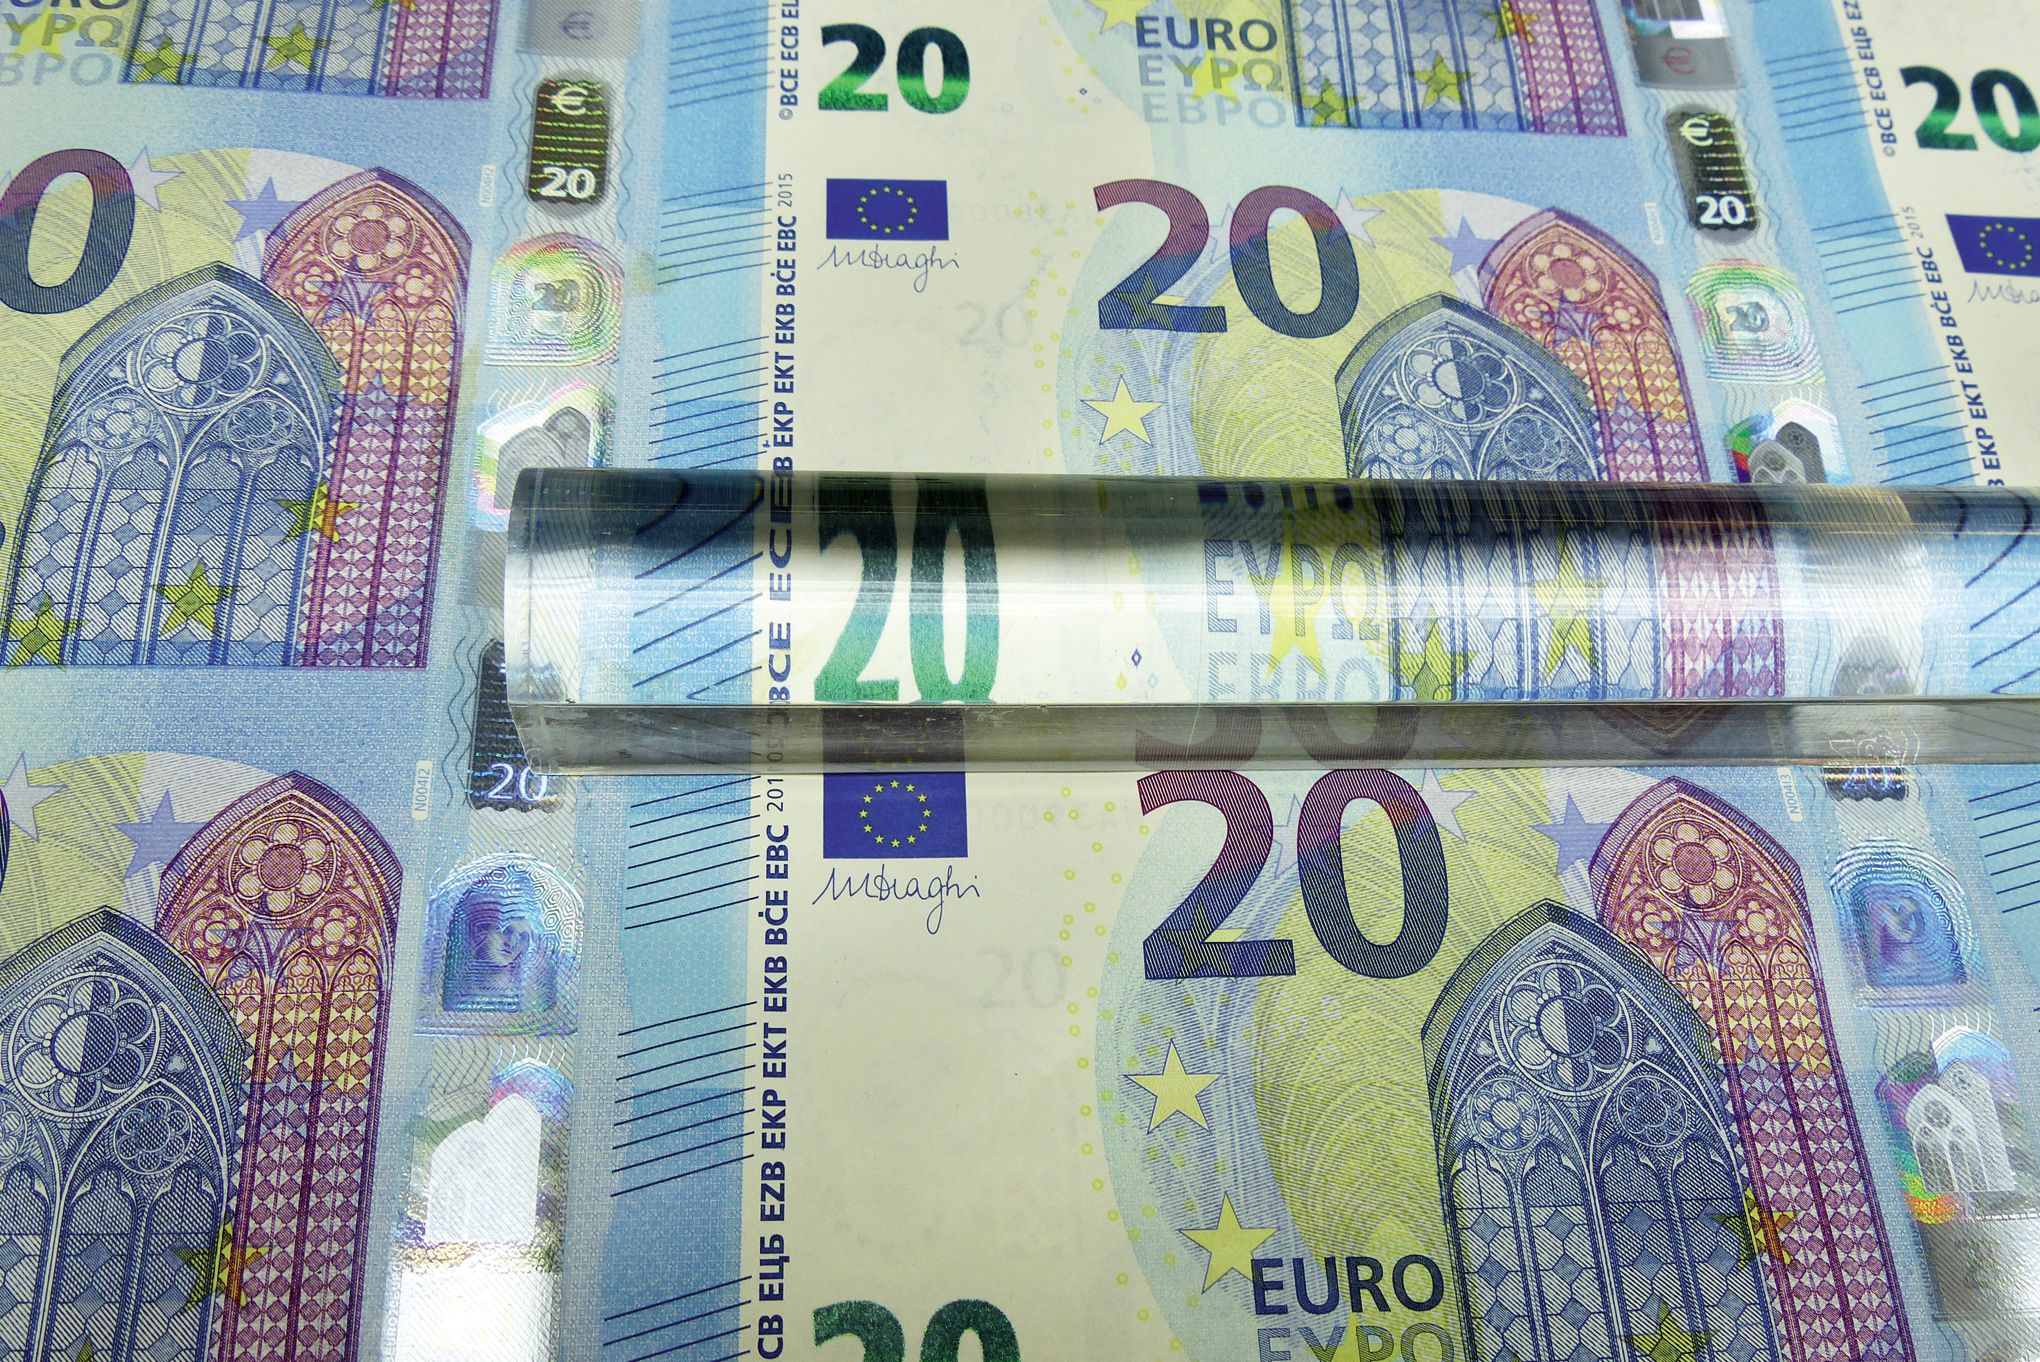 Billets de 5 euros : pas distribués dans les automates, d'où viennent-ils ?